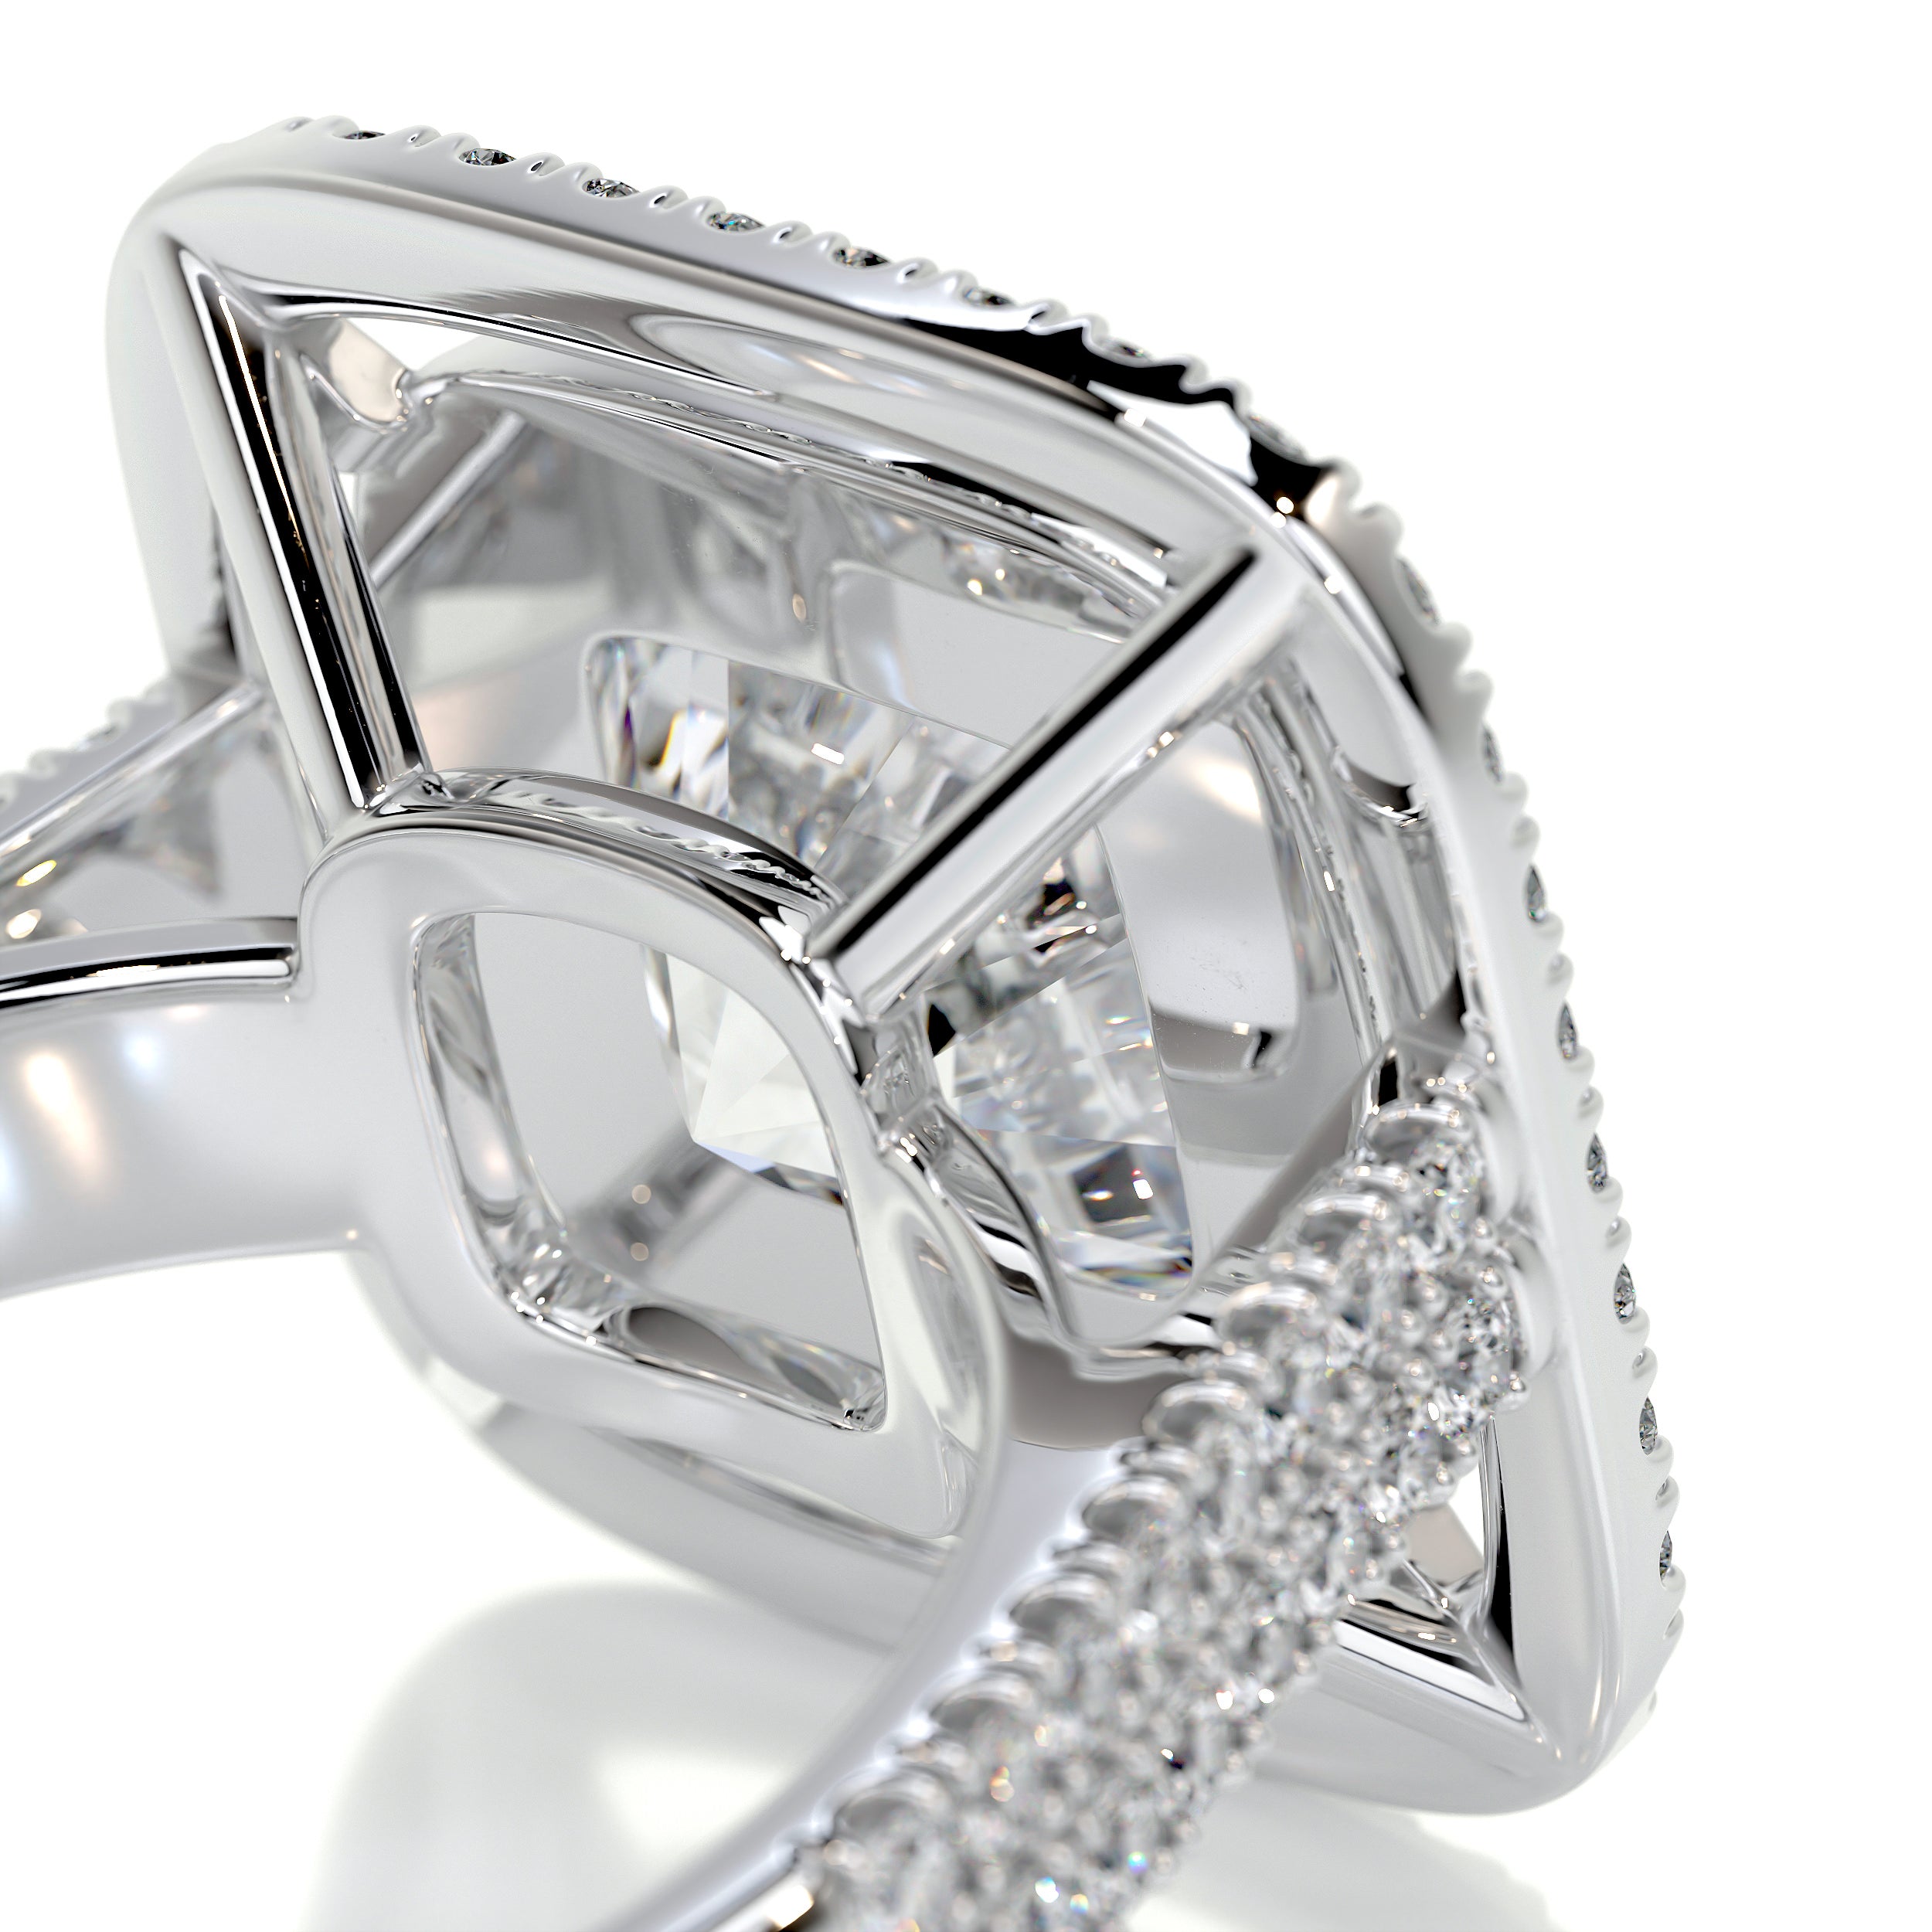 Piper Diamond Engagement Ring - 14K White Gold